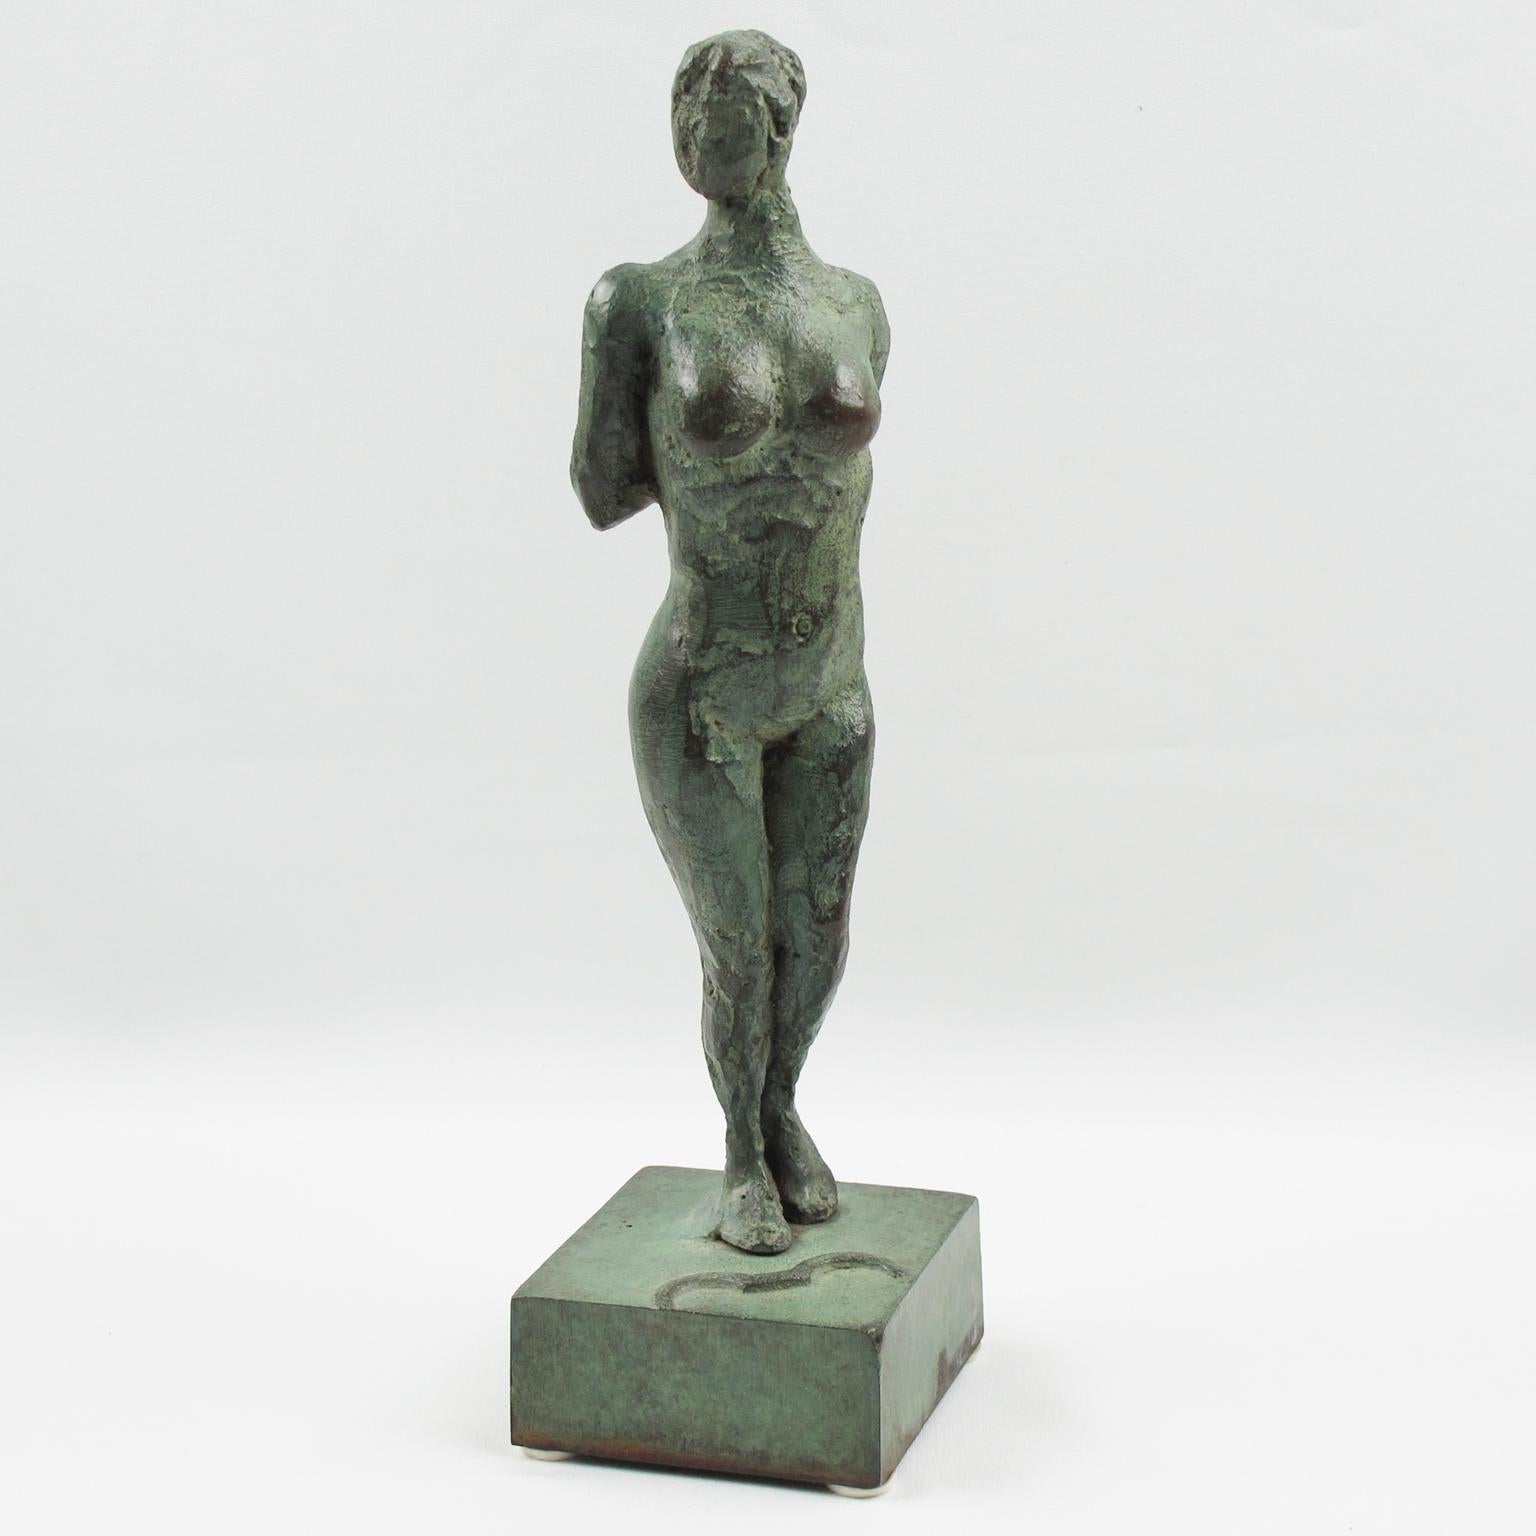 Il s'agit d'une superbe figurine en bronze de style Art déco français. La statue présente une interprétation stylisée en style libre d'Artemis ou de Diane chasseresse. La femme nue présente un motif texturé fait à la main, les deux bras dans le dos.